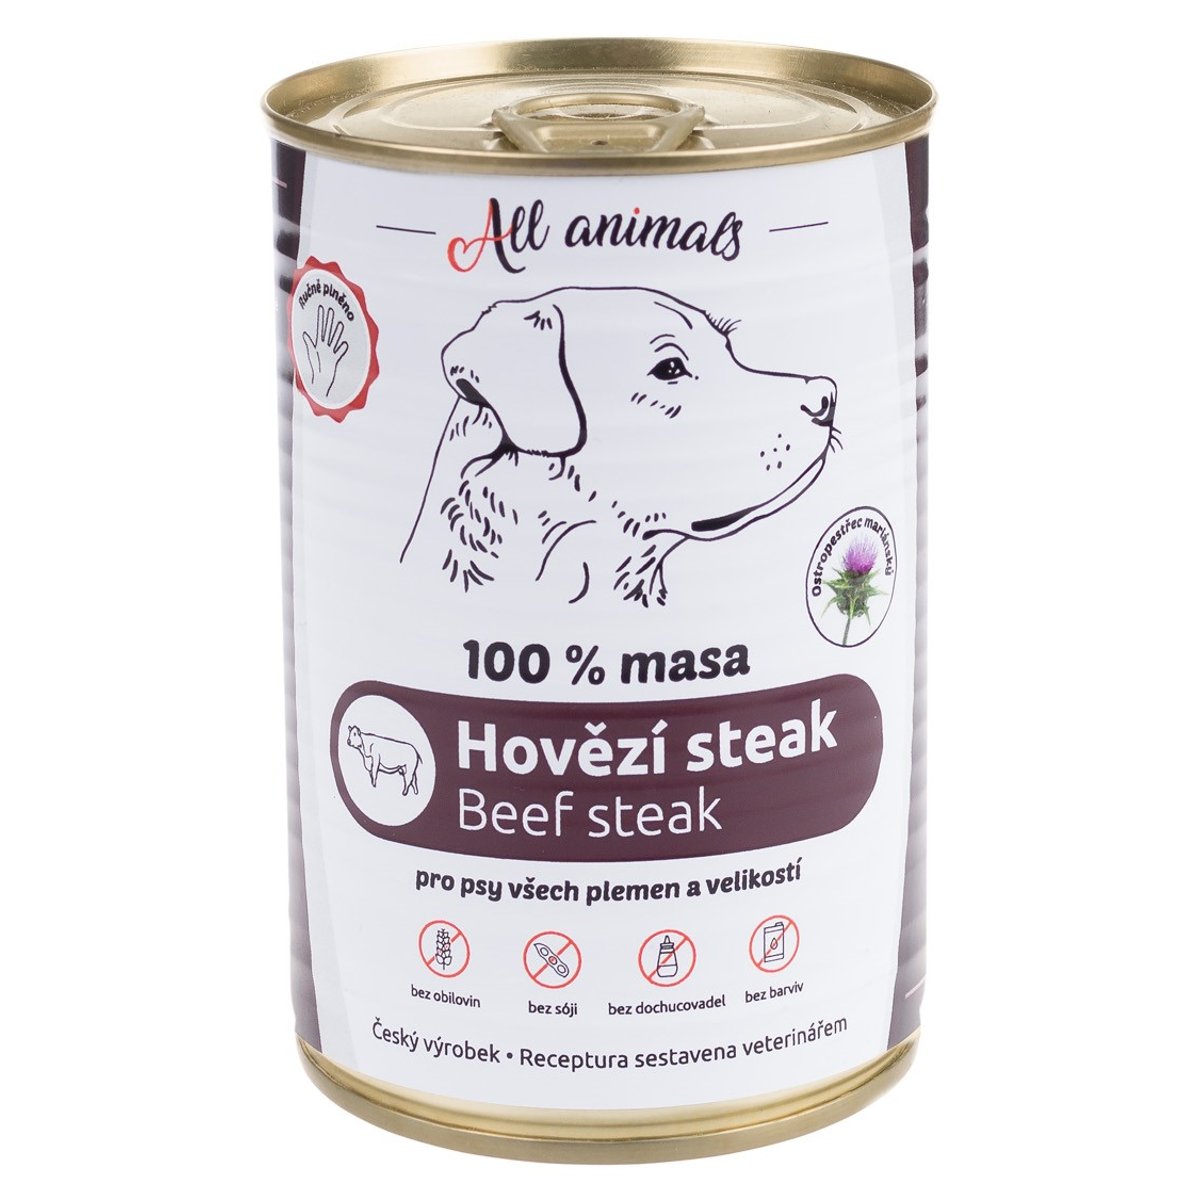 All Animals Hovězí steak konzerva pro psy